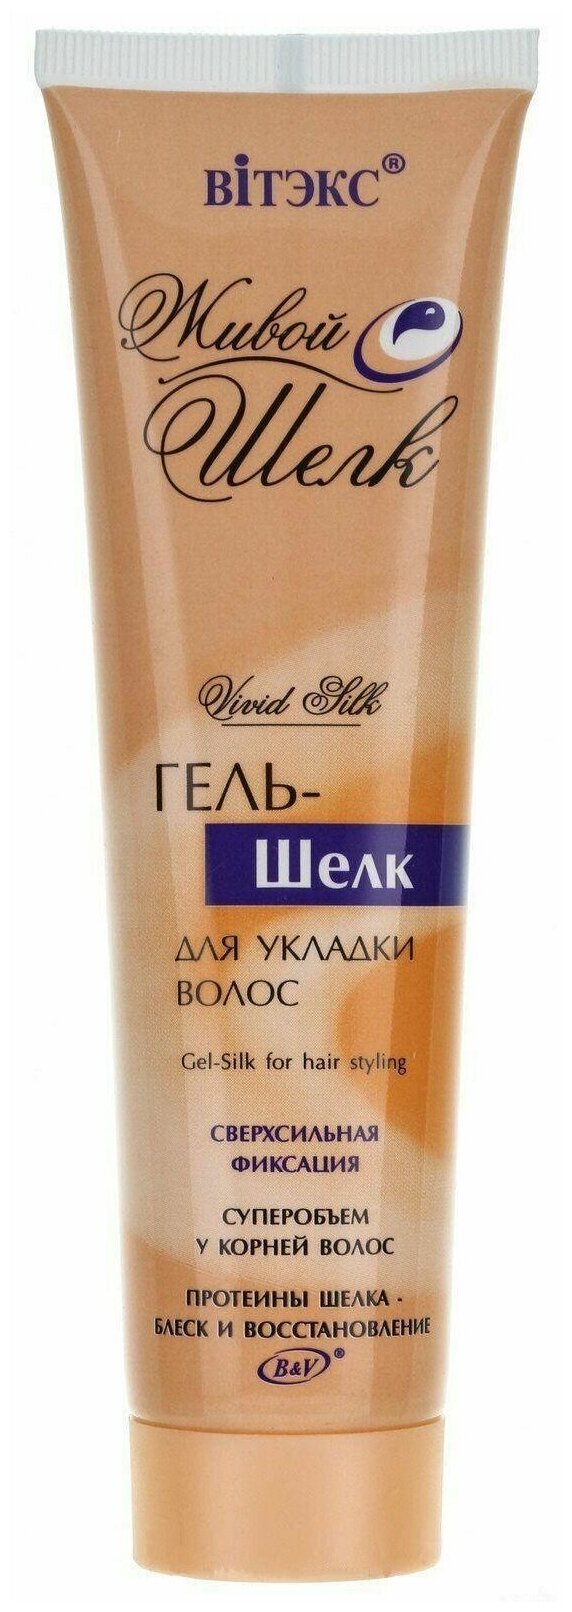 Витэкс Живой Шёлк Гель - шелк для укладки волос сверхсильной фиксации, 100 мл